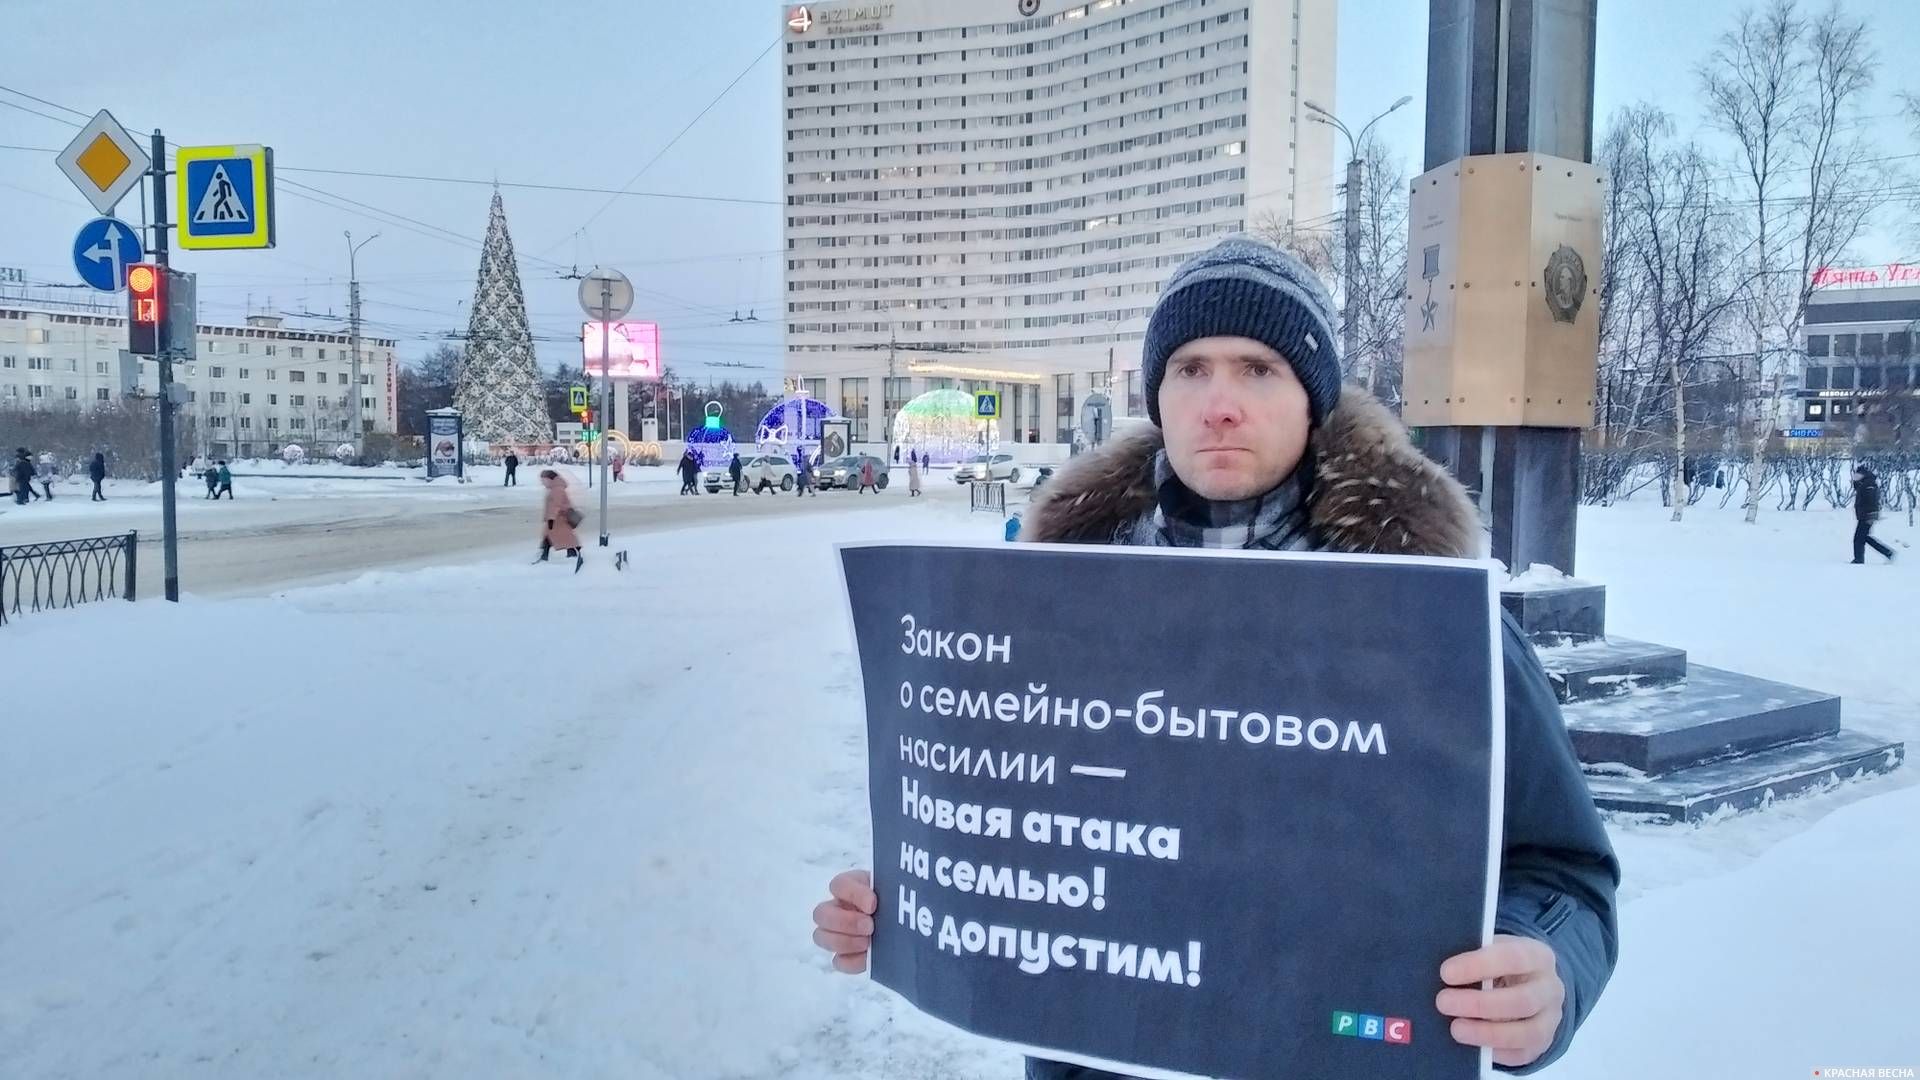 Пикет против проекта закона о семейно-бытовом насилии. Мурманск 11.01.2019